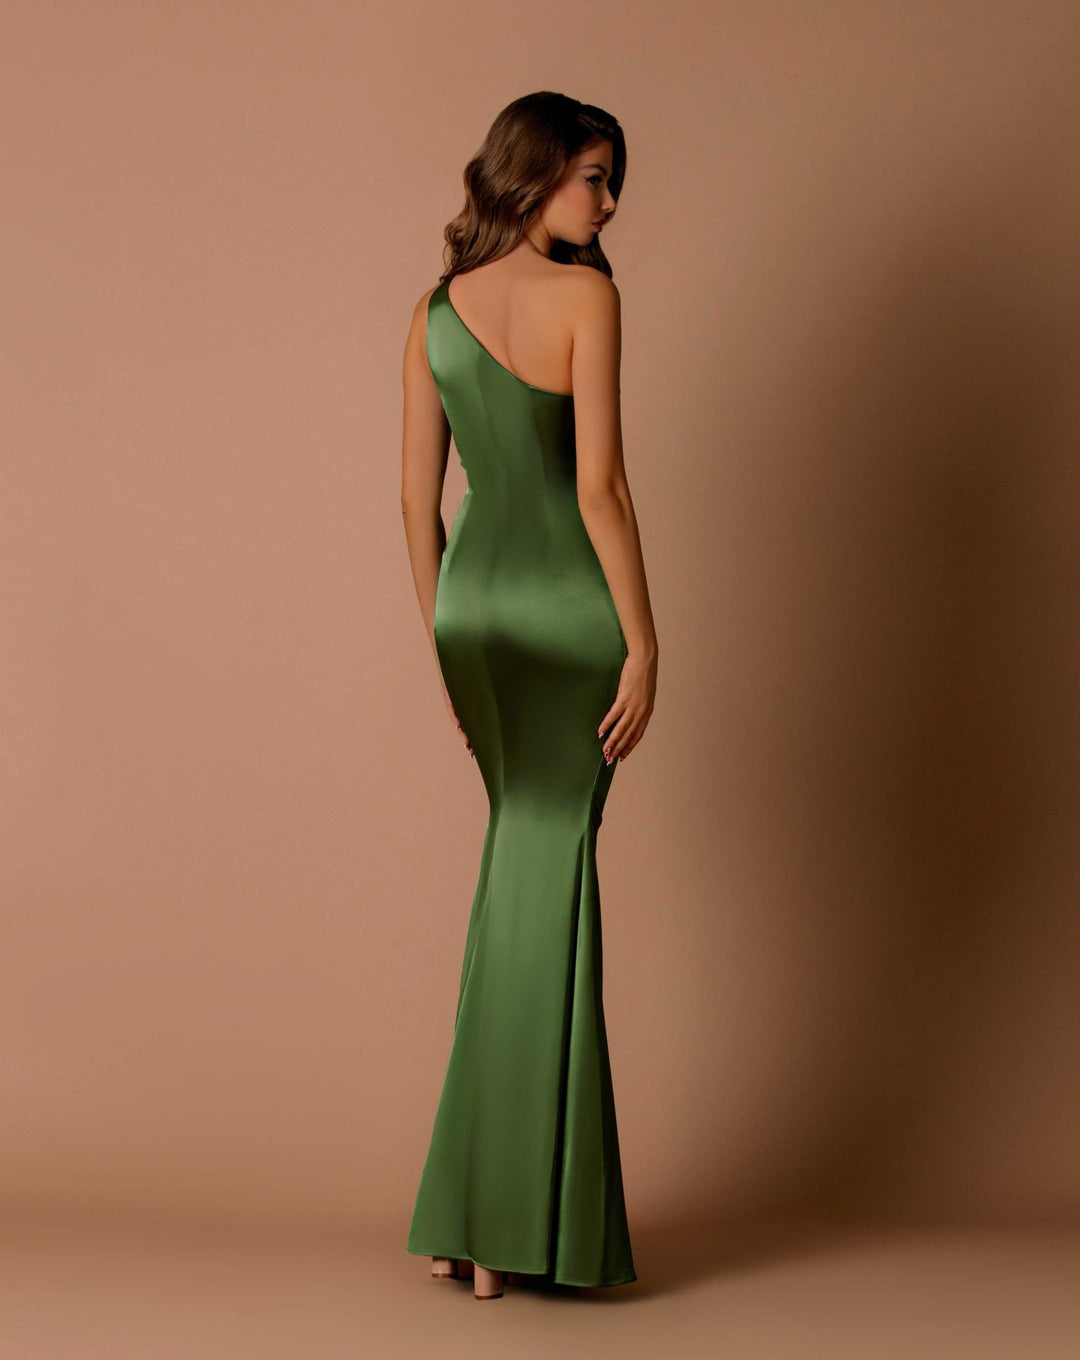 Ashlyn Dress by Nicoletta NBM1013 - ElissaJay Boutique